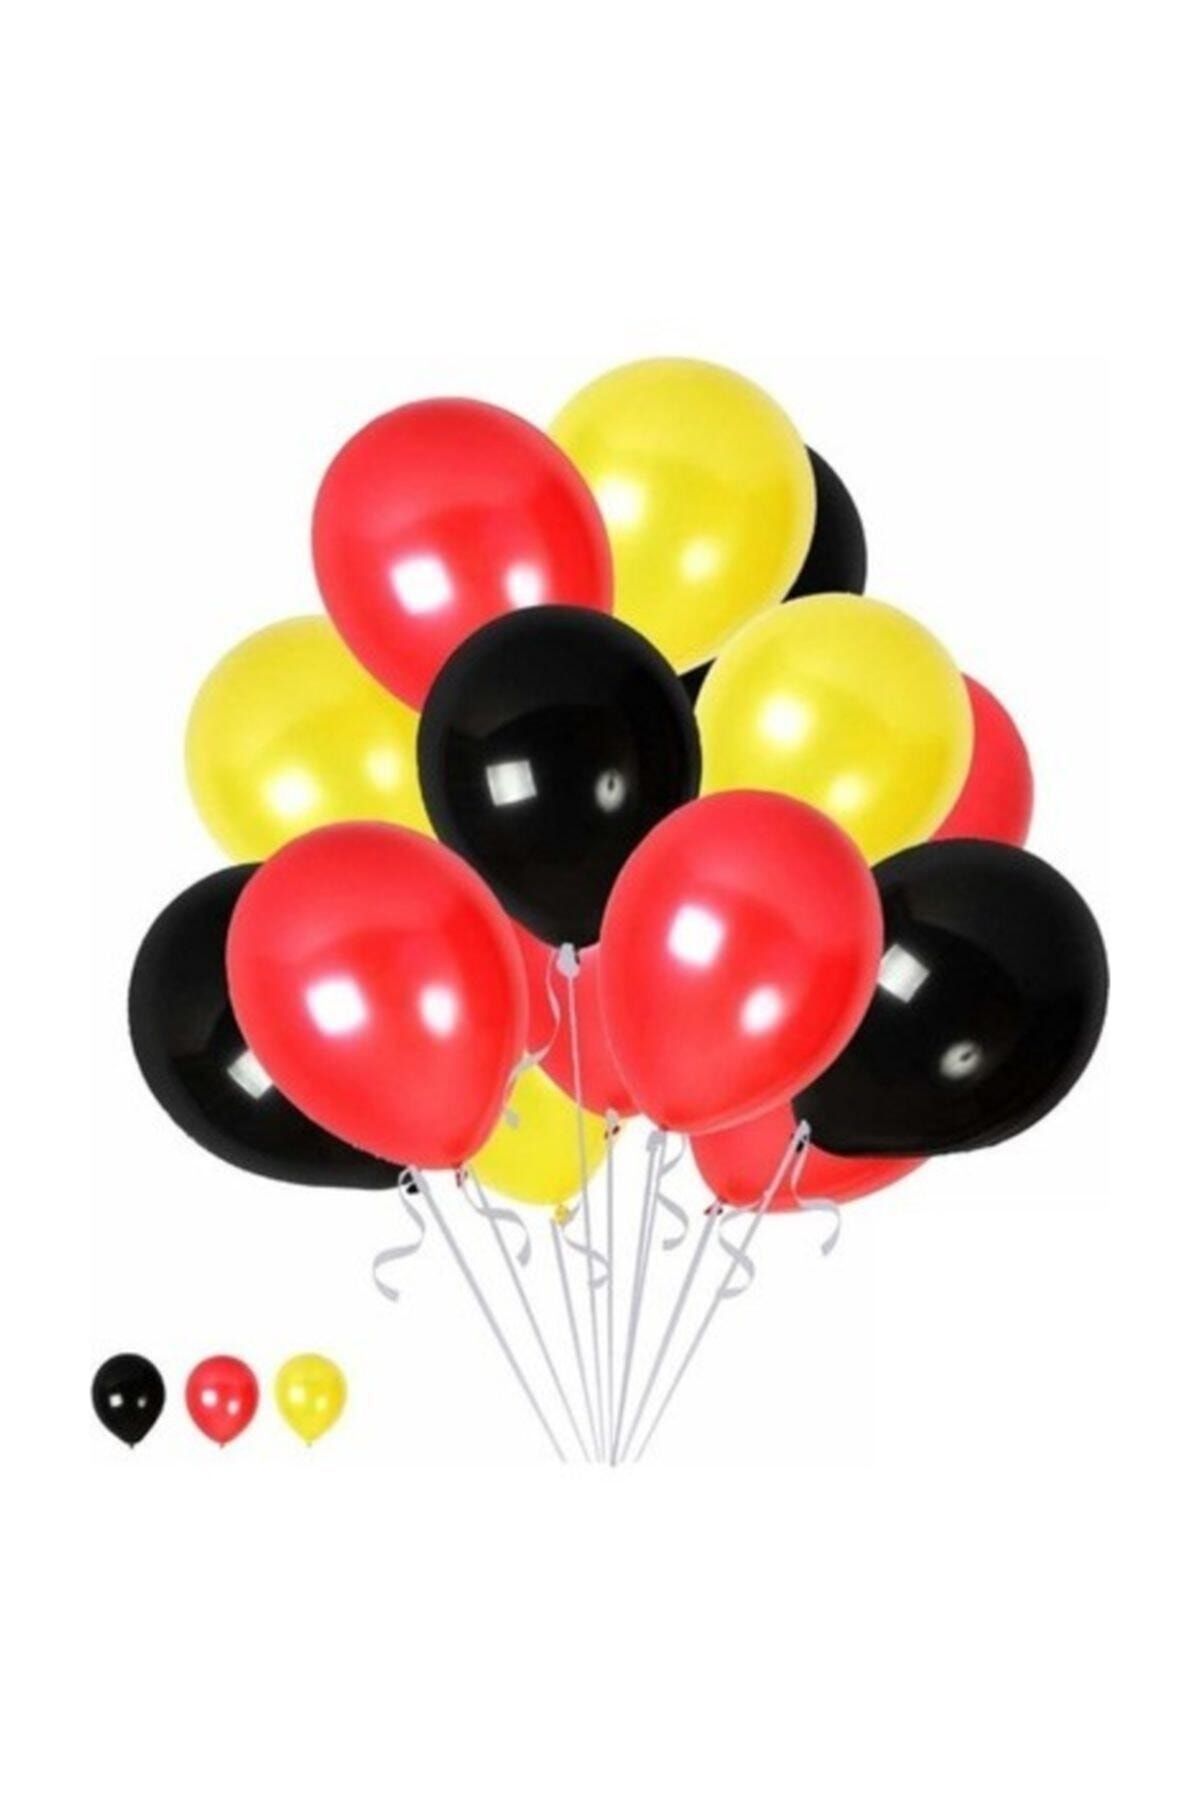 TATLI GÜNLER 10 Siyah 10 Kırmızı 10 Sarı Konsept Balonlar Metalik Parlak 30-35 Cm